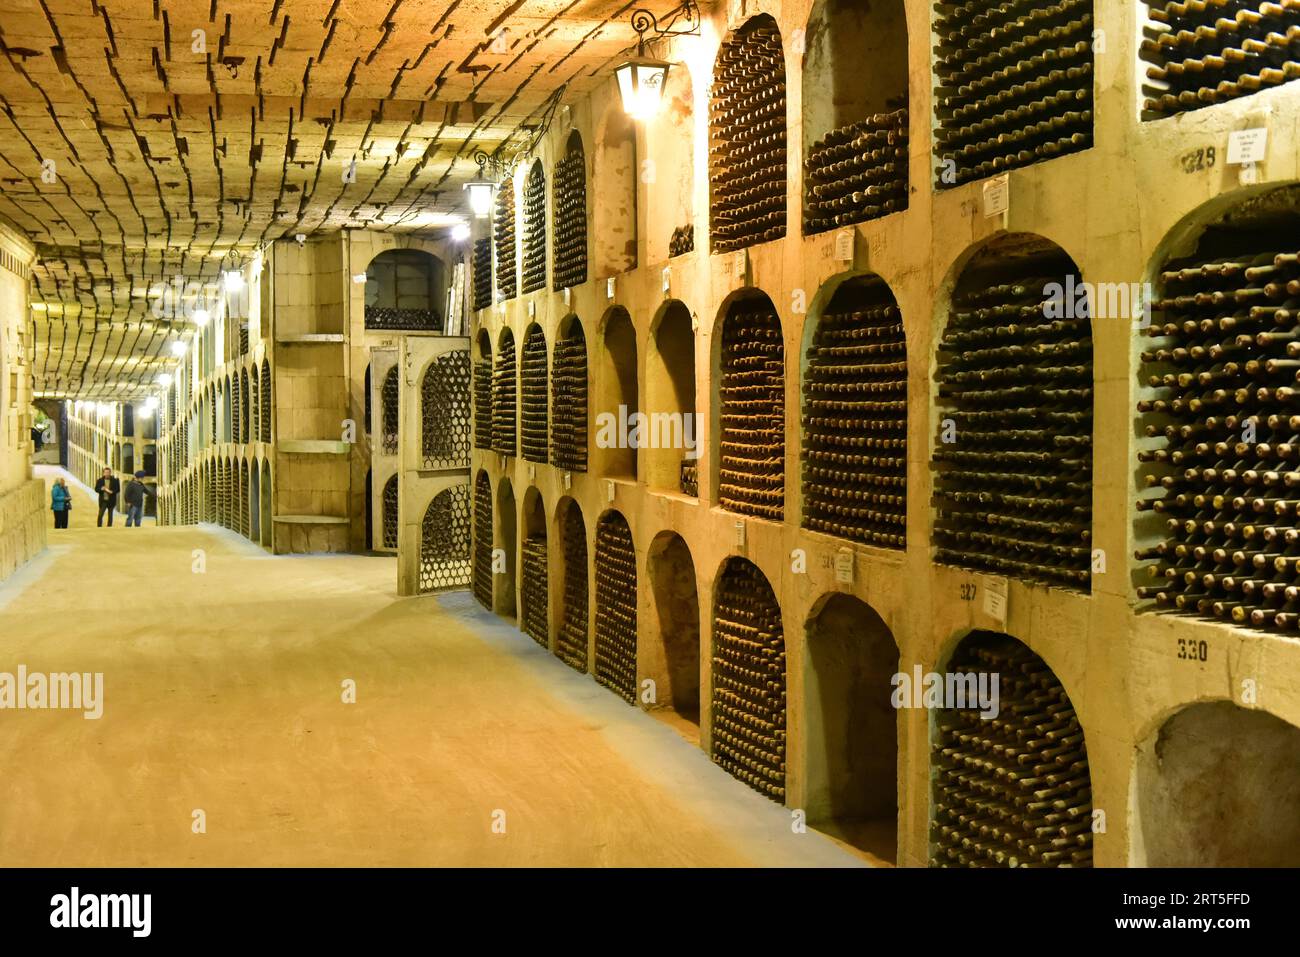 Vinaria Milestii MICI, la plus grande cave à vin du monde avec 55 km de tunnels calcaires utilisés pour le stockage et la production des vins Banque D'Images